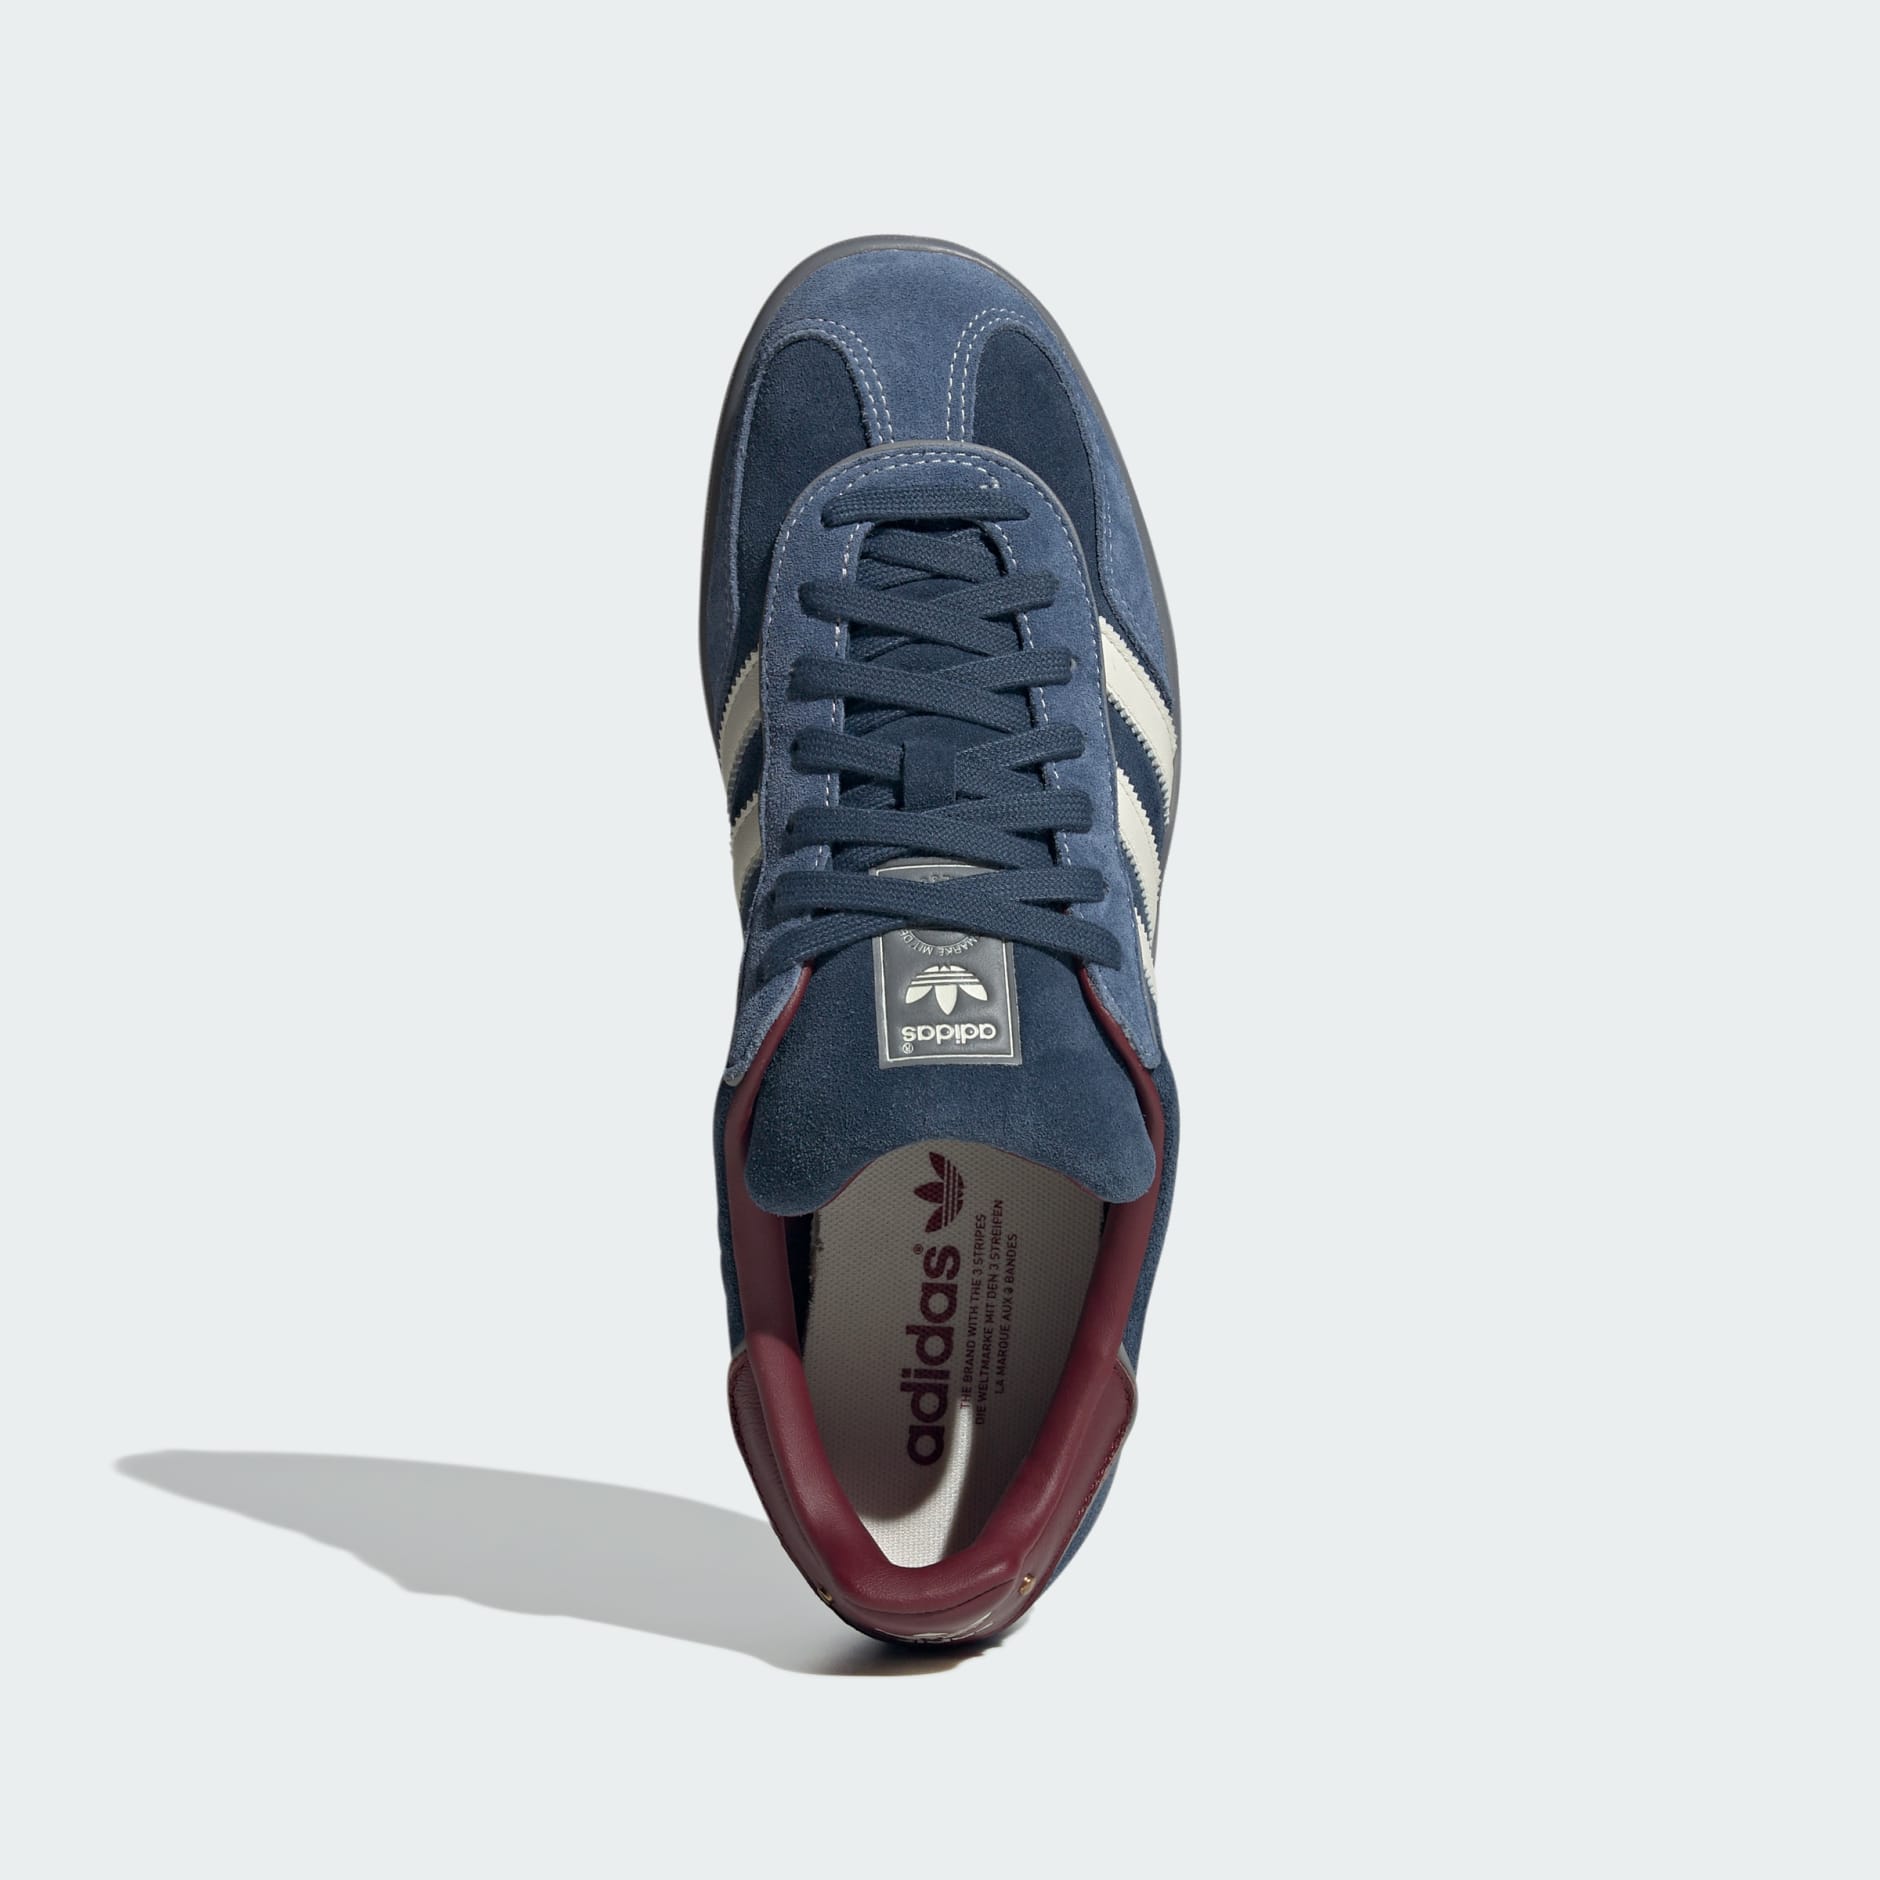 adidas Originals suede sneakers Gazelle Indoor blue color buy on PRM